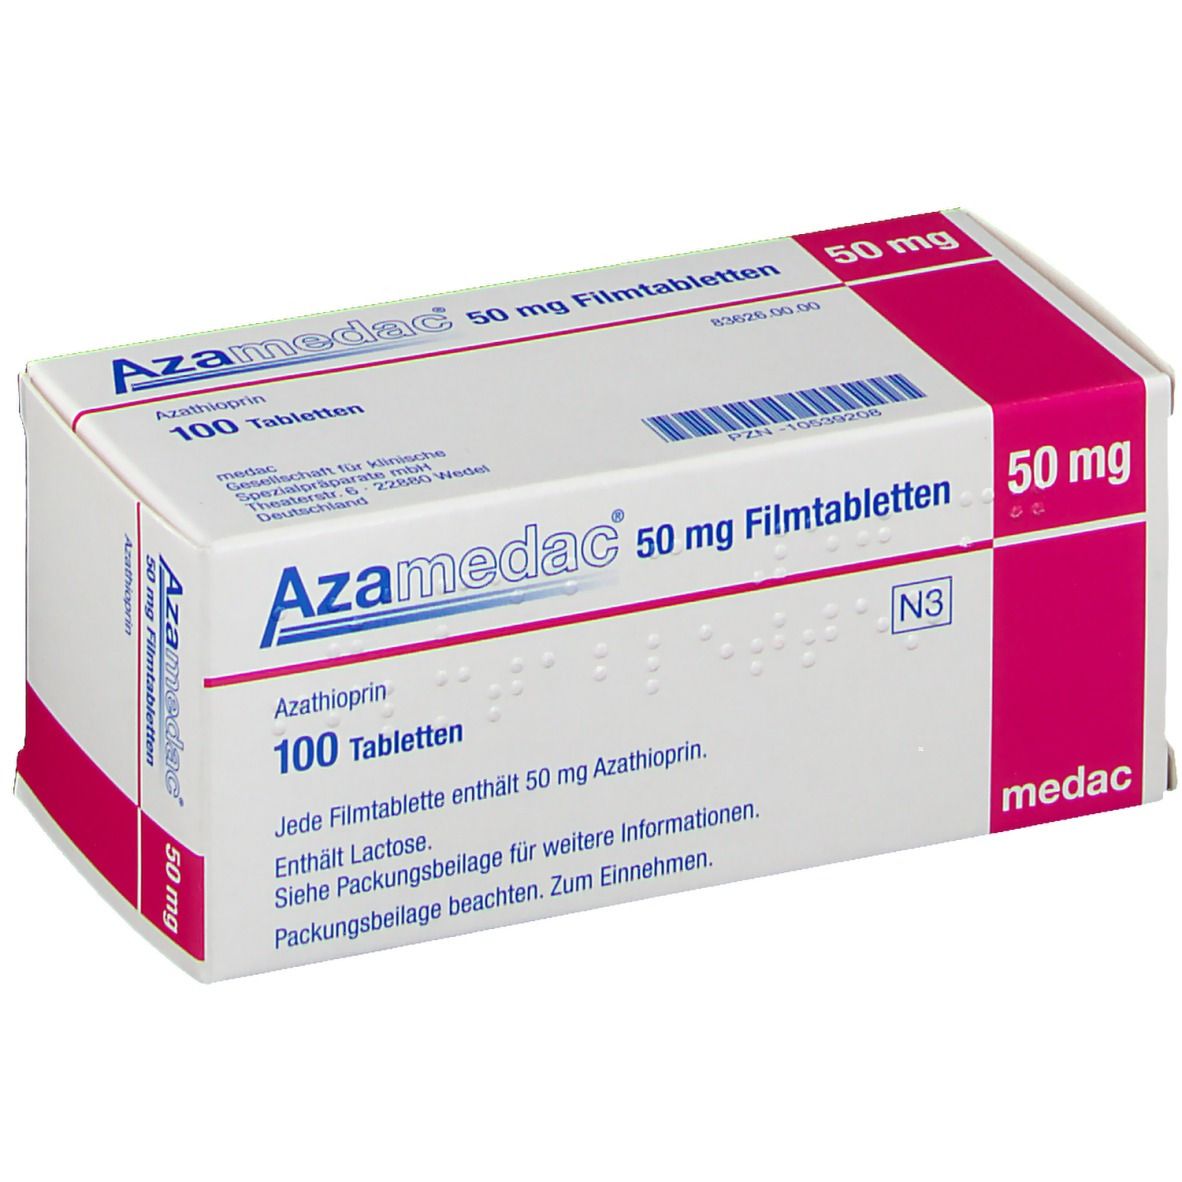 AZAMEDAC 50 mg Filmtabletten